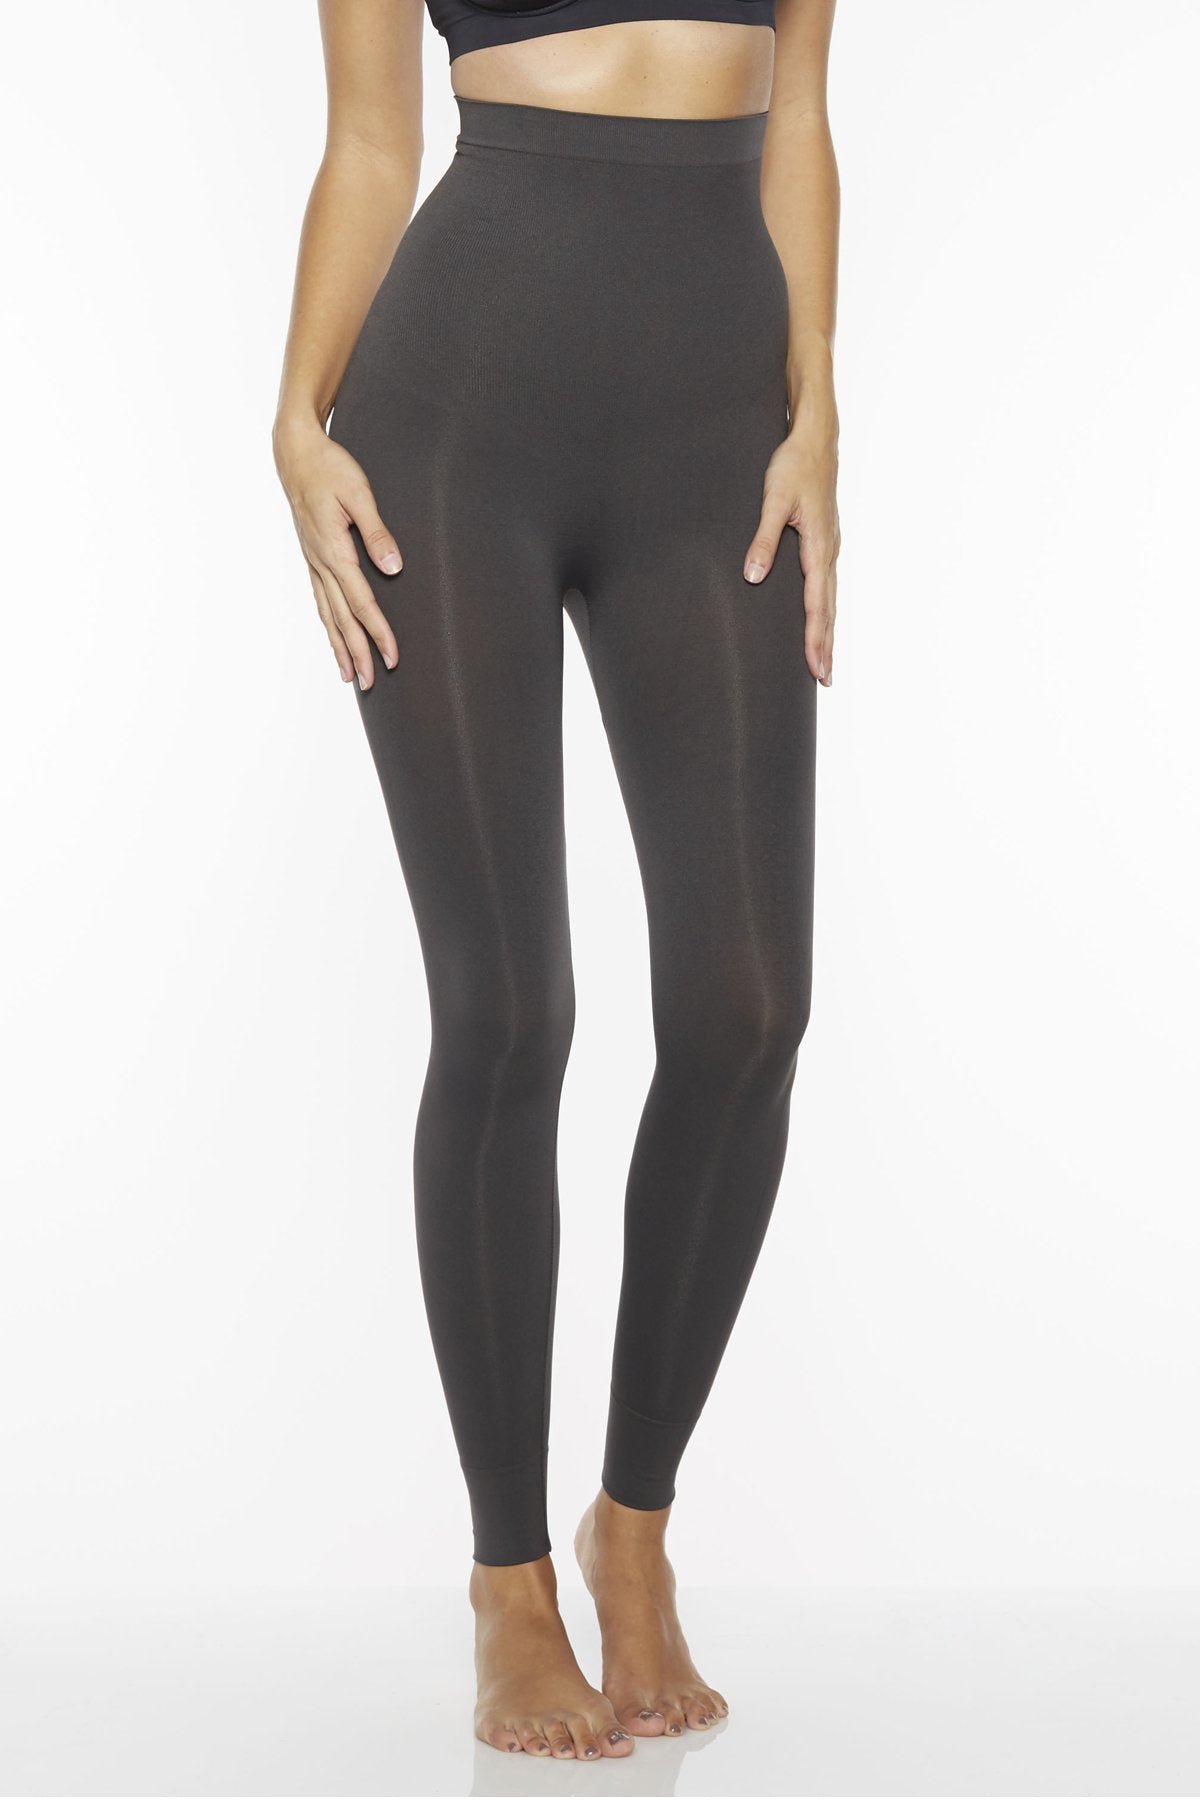 Rhonda Shear shapewear grey leggings size 2X - $25 - From Melinda